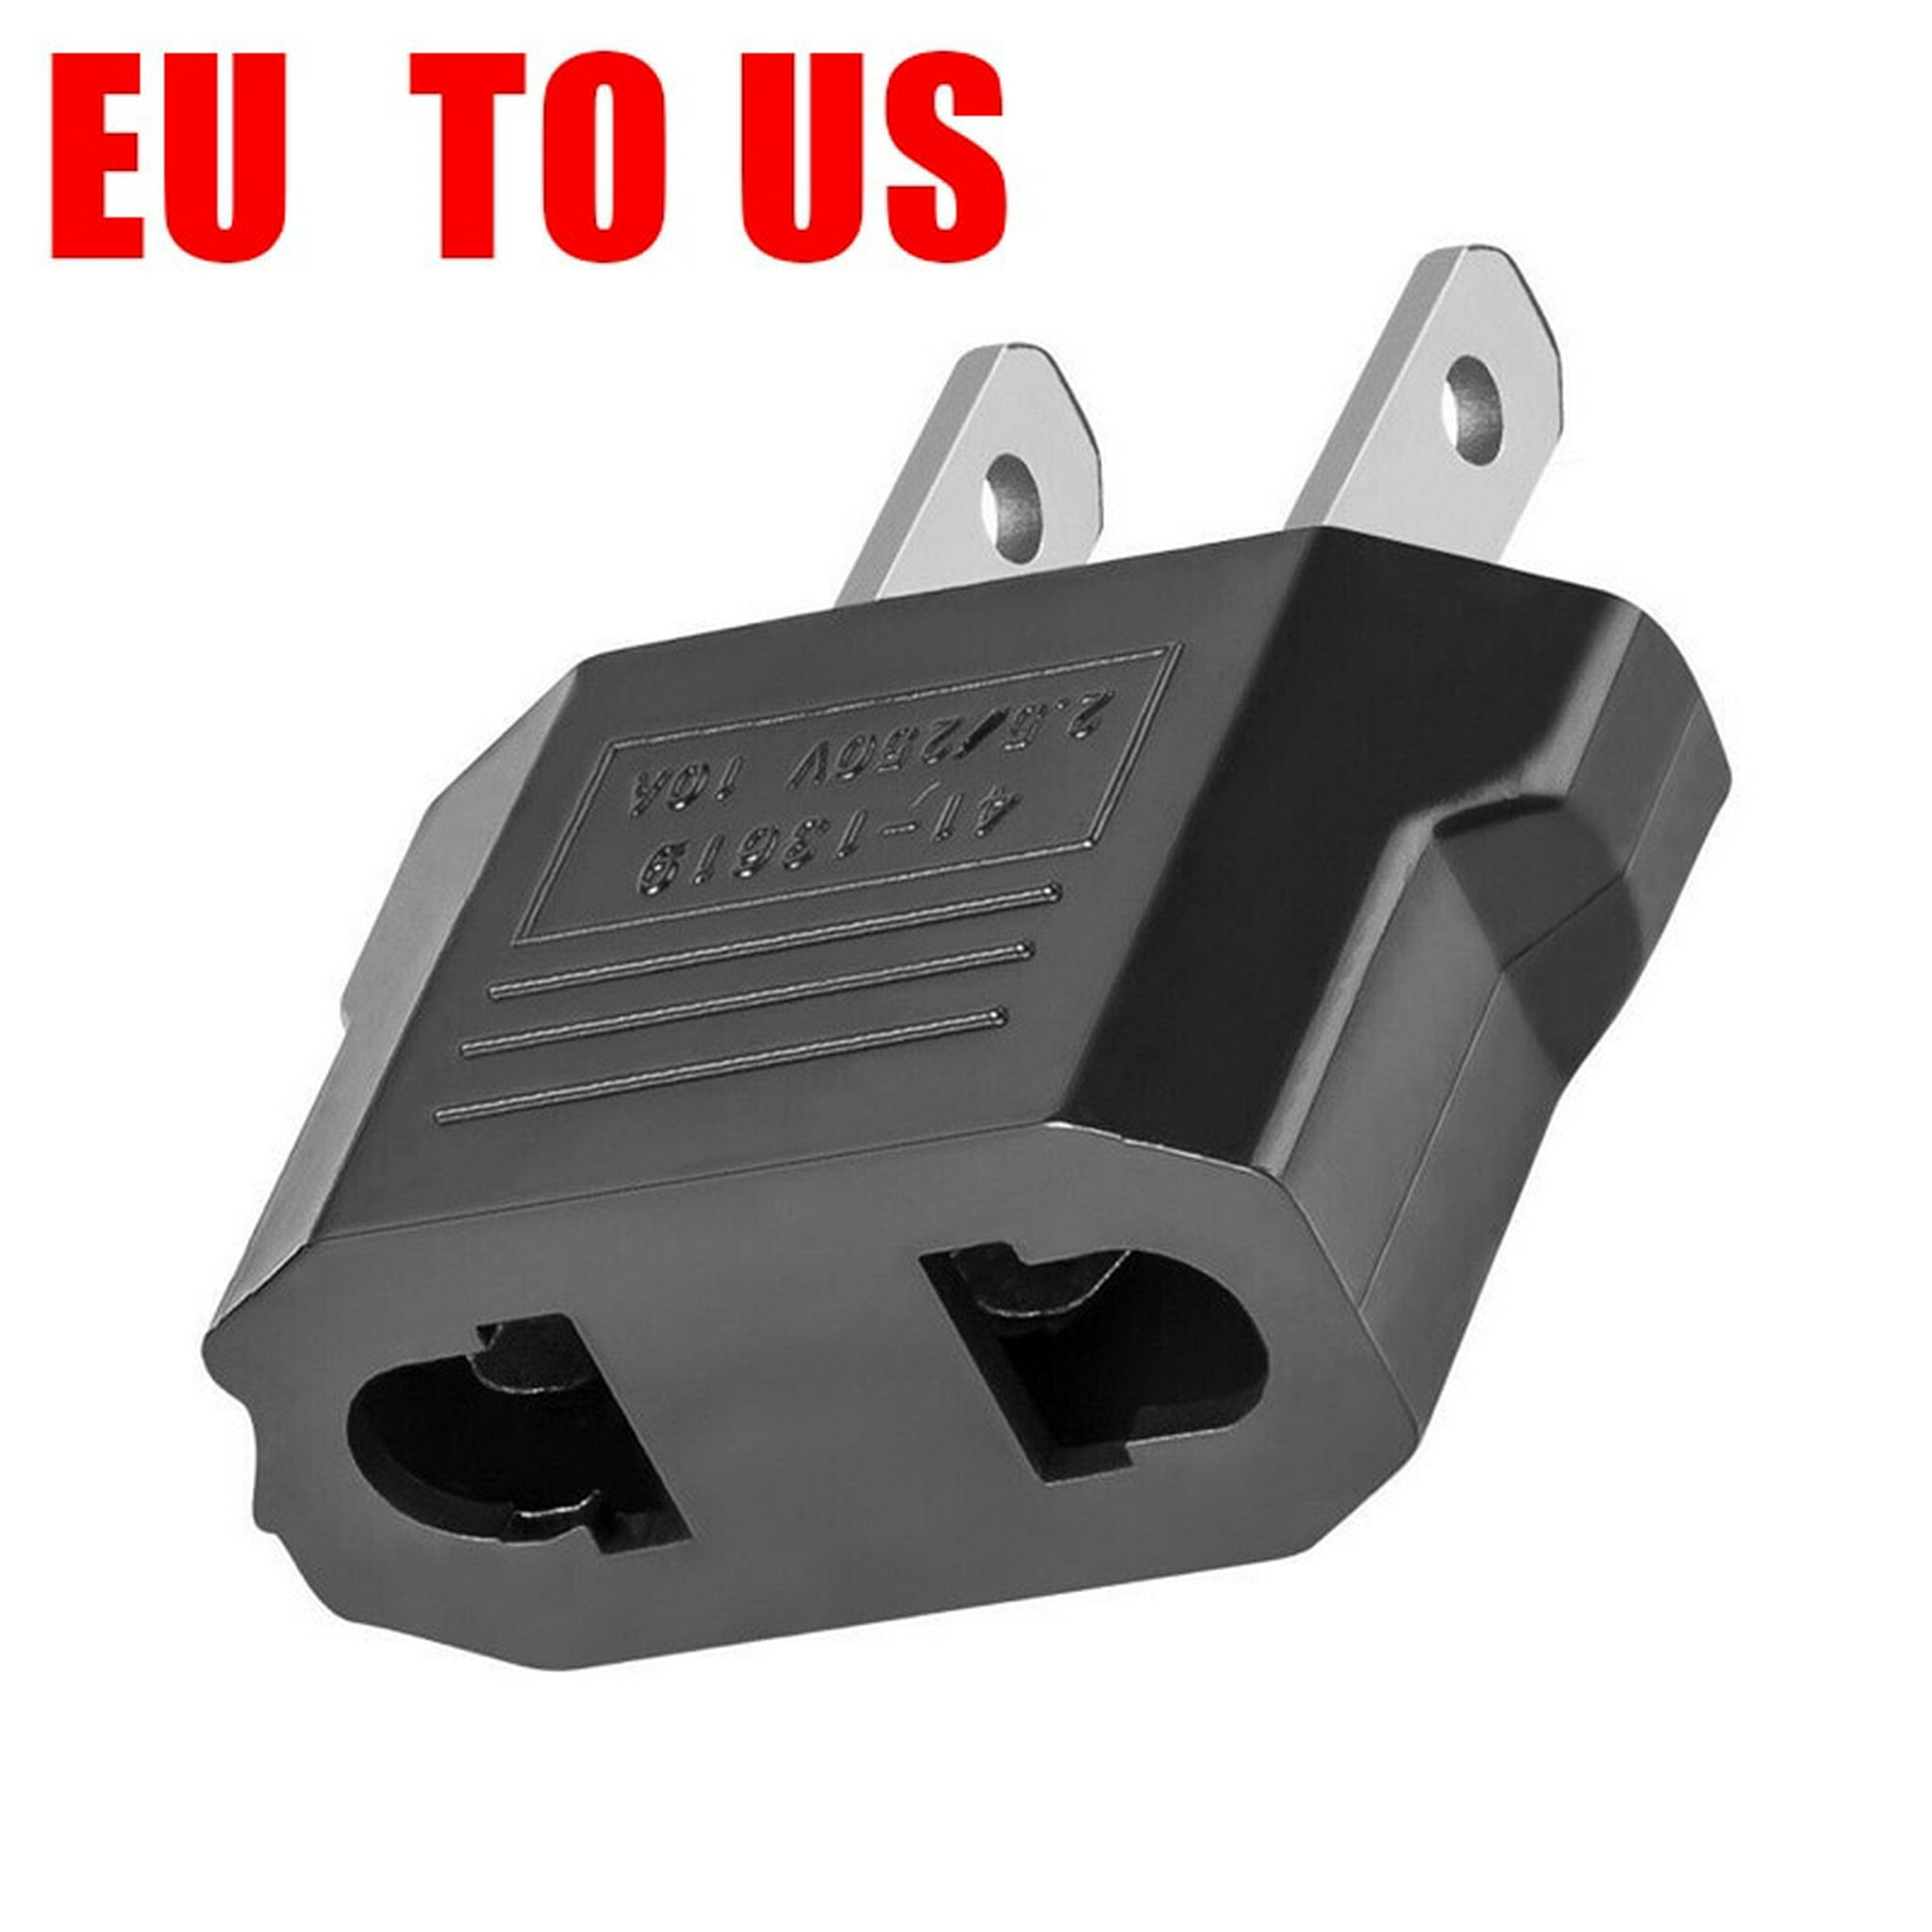 Plugs – 5 adaptadores de enchufe estadounidense japonés CN EU KR para  enchufe eléctrico de viaje europeo europeo Euro KR americano.